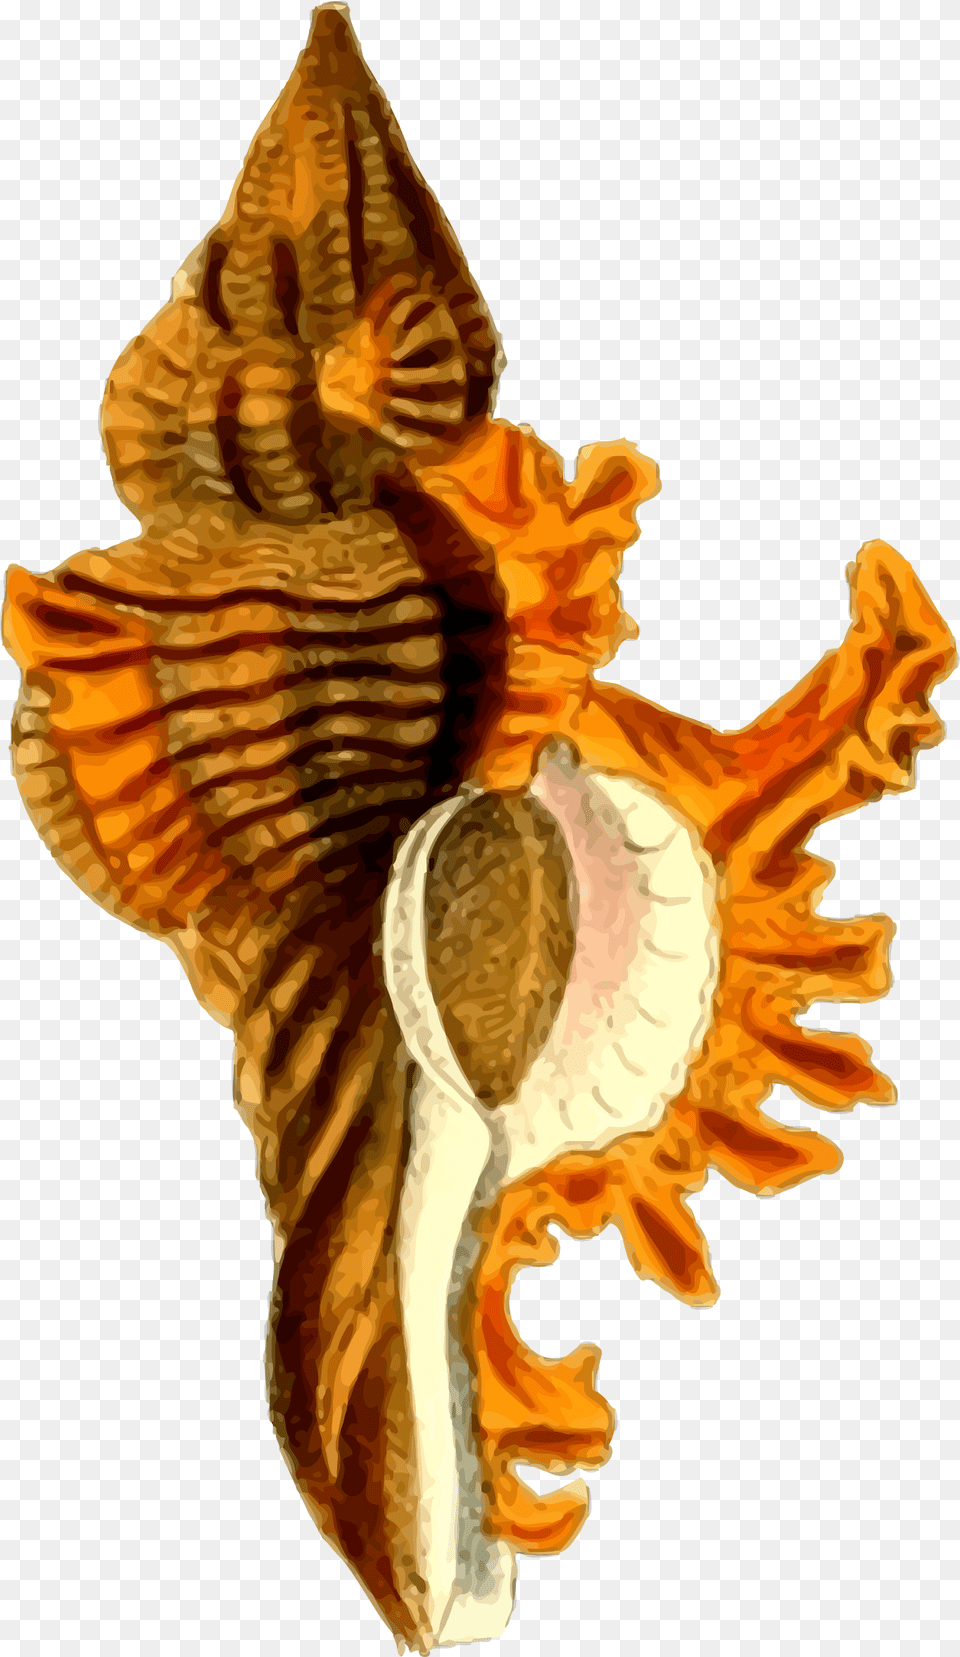 Sea Shell 29 Clip Arts Sea Shells Hd, Animal, Invertebrate, Sea Life, Seashell Png Image